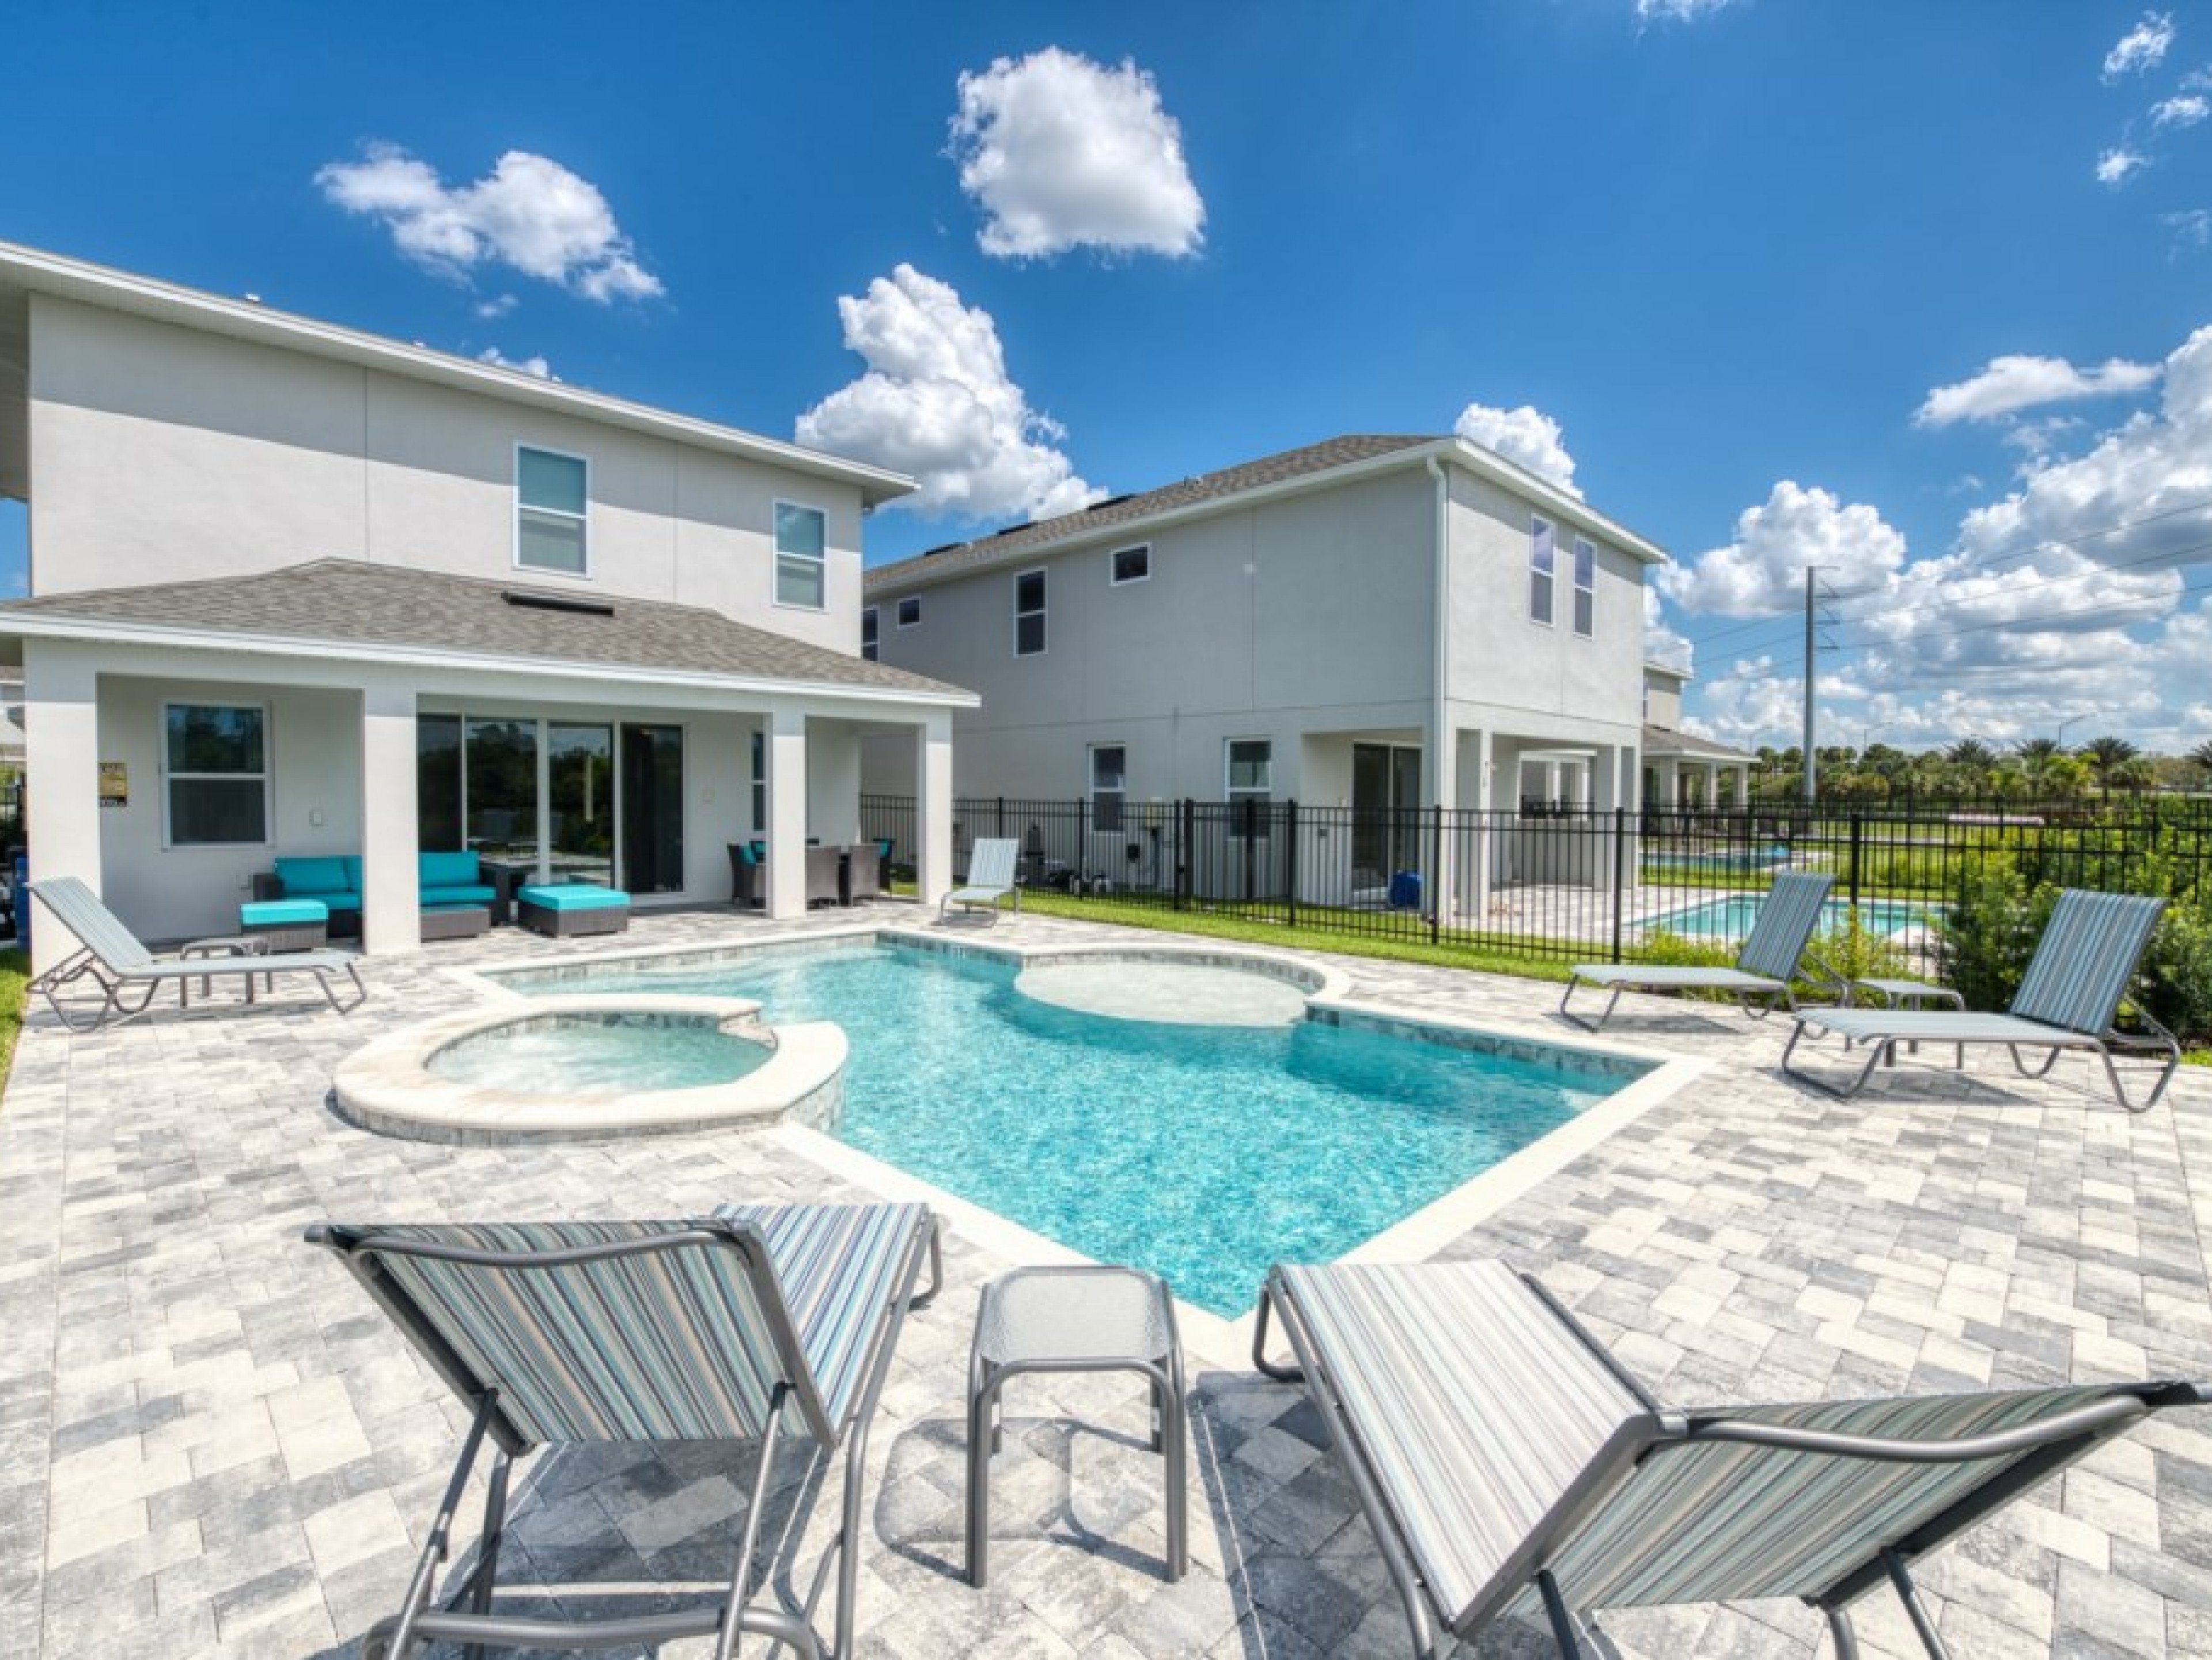 4 bedroom vacation rentals in Orlando Florida Encore Resort 653